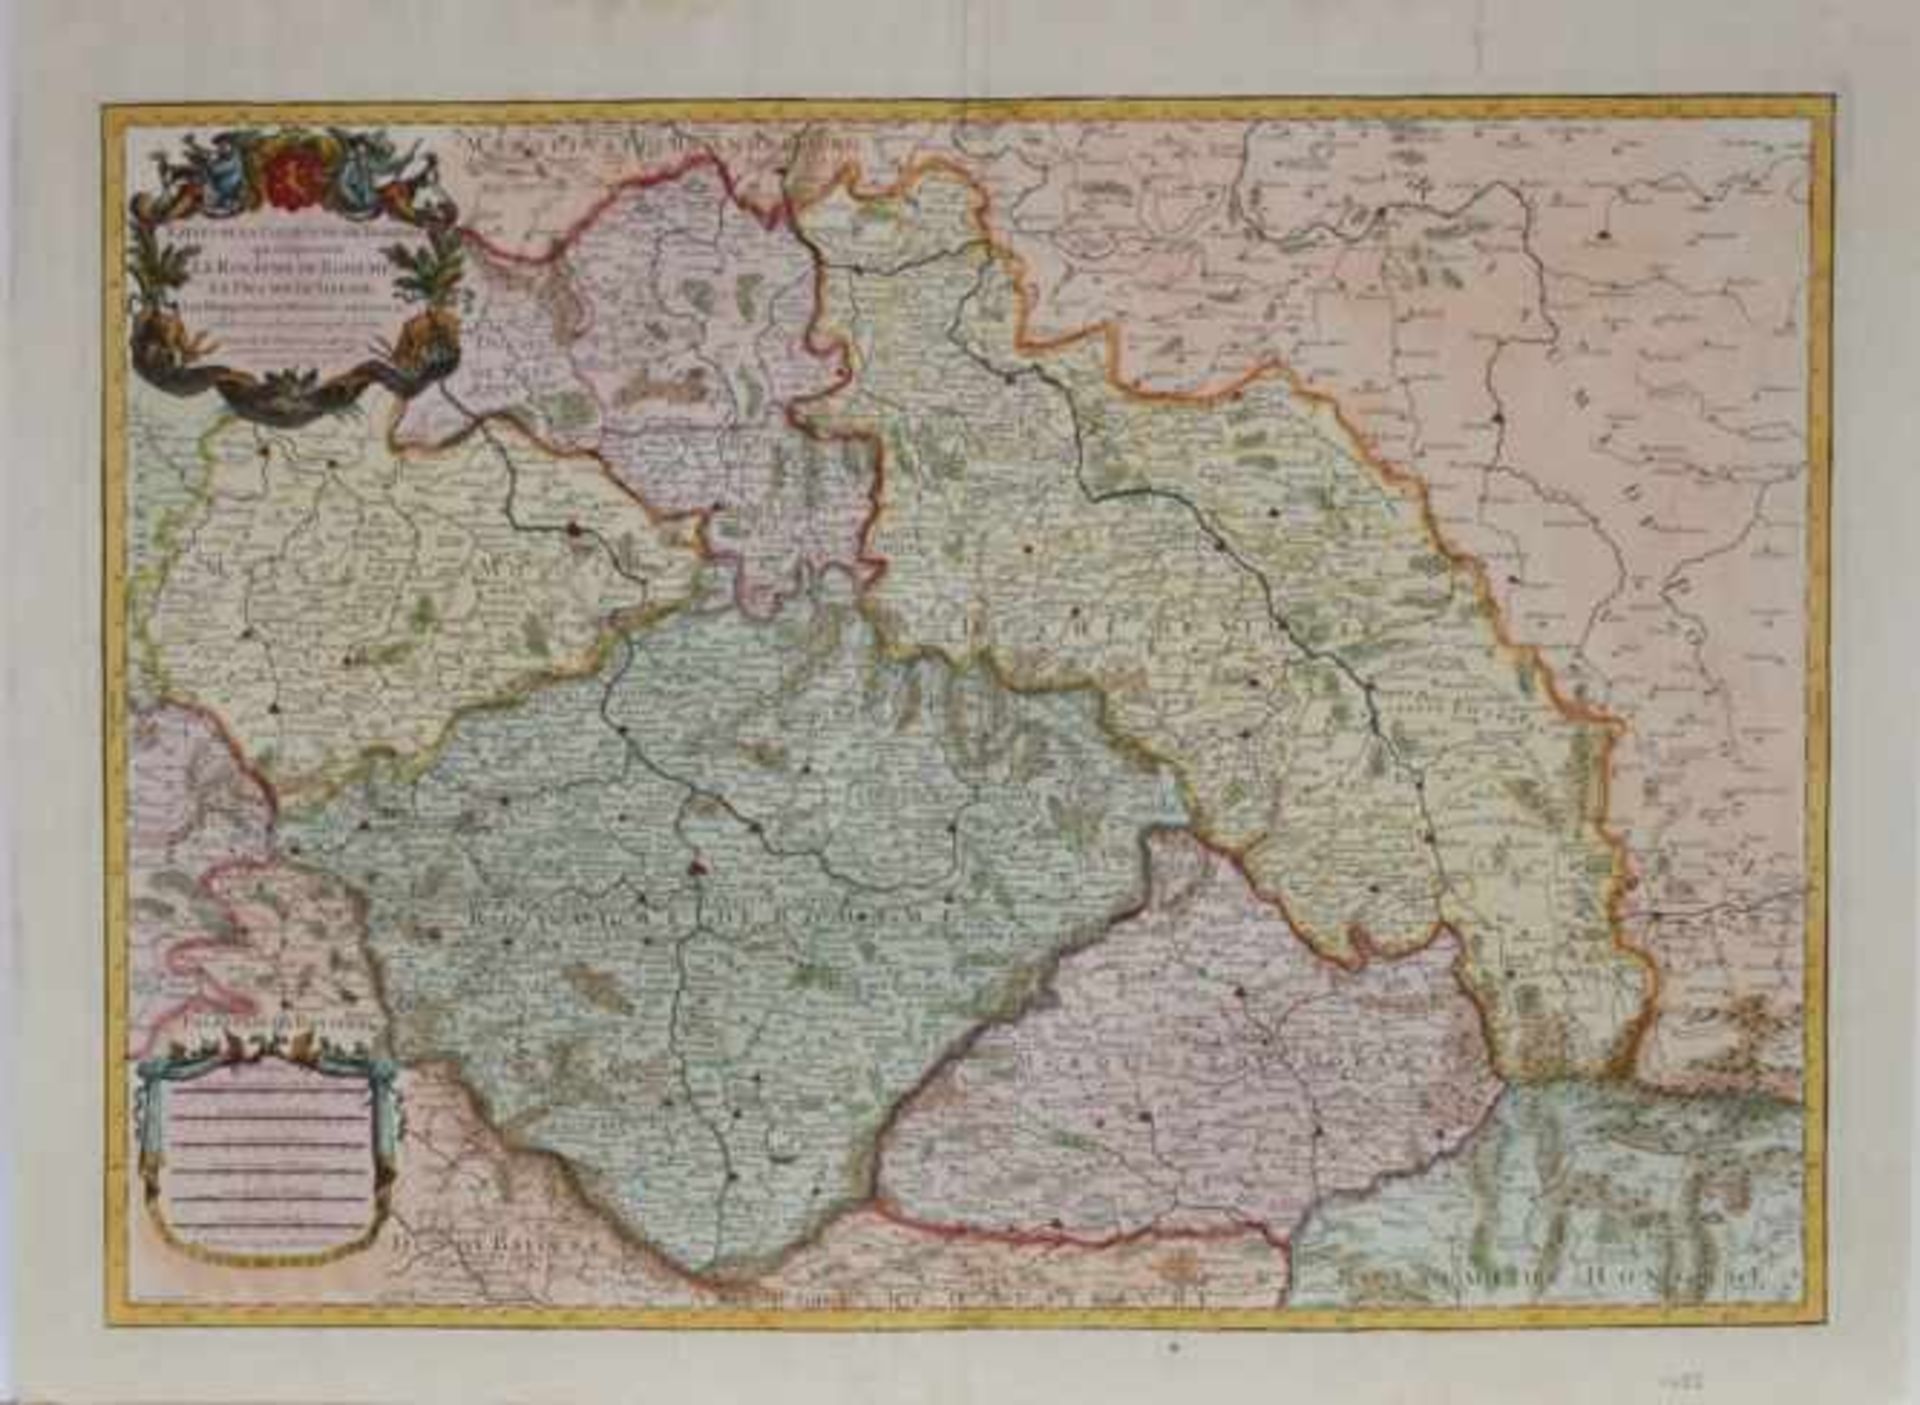 Böhmen / Schlesien.Kolorierte Kupferstichkarte von Jaillot, Paris, 1785. Bildgröße 63,5 x 45,5